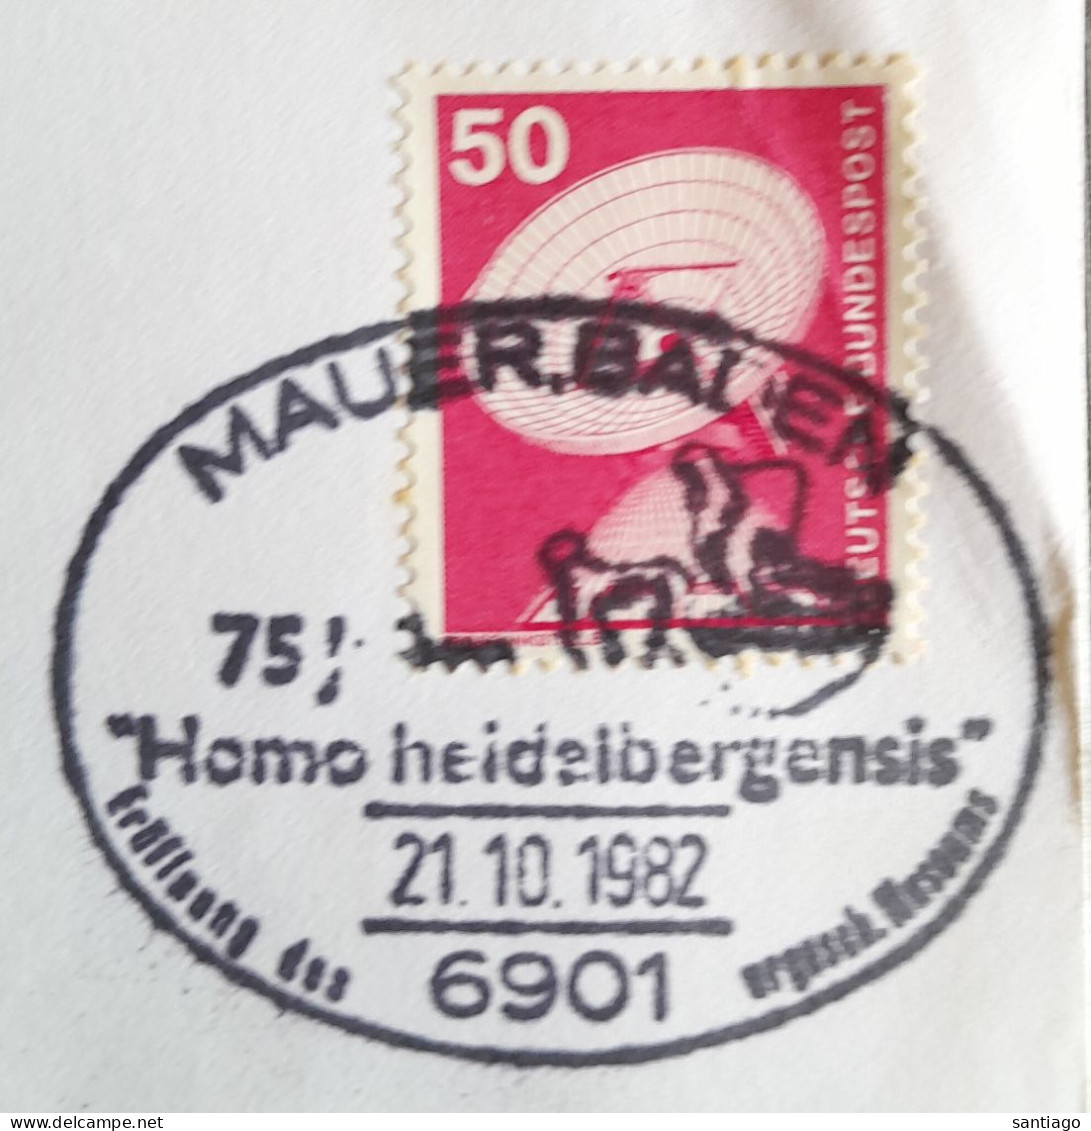 Duitsland  Mauer Baden / Homo Heidelbergensis - Archeologia